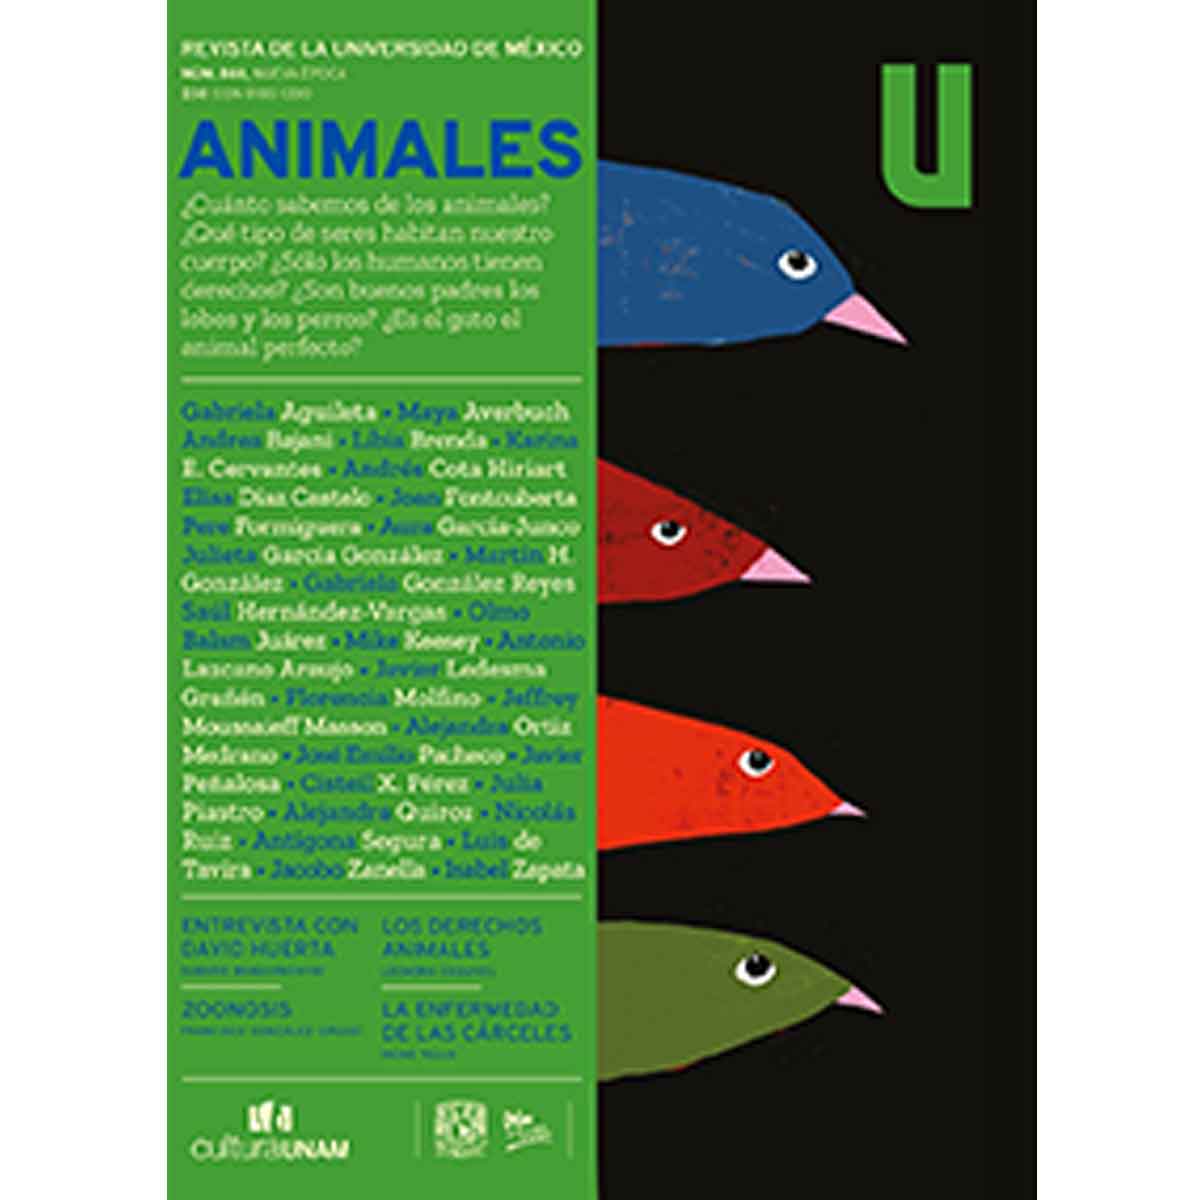 REVISTA DE LA UNIVERSIDAD DE MÉXICO nro. 860 ANIMALES